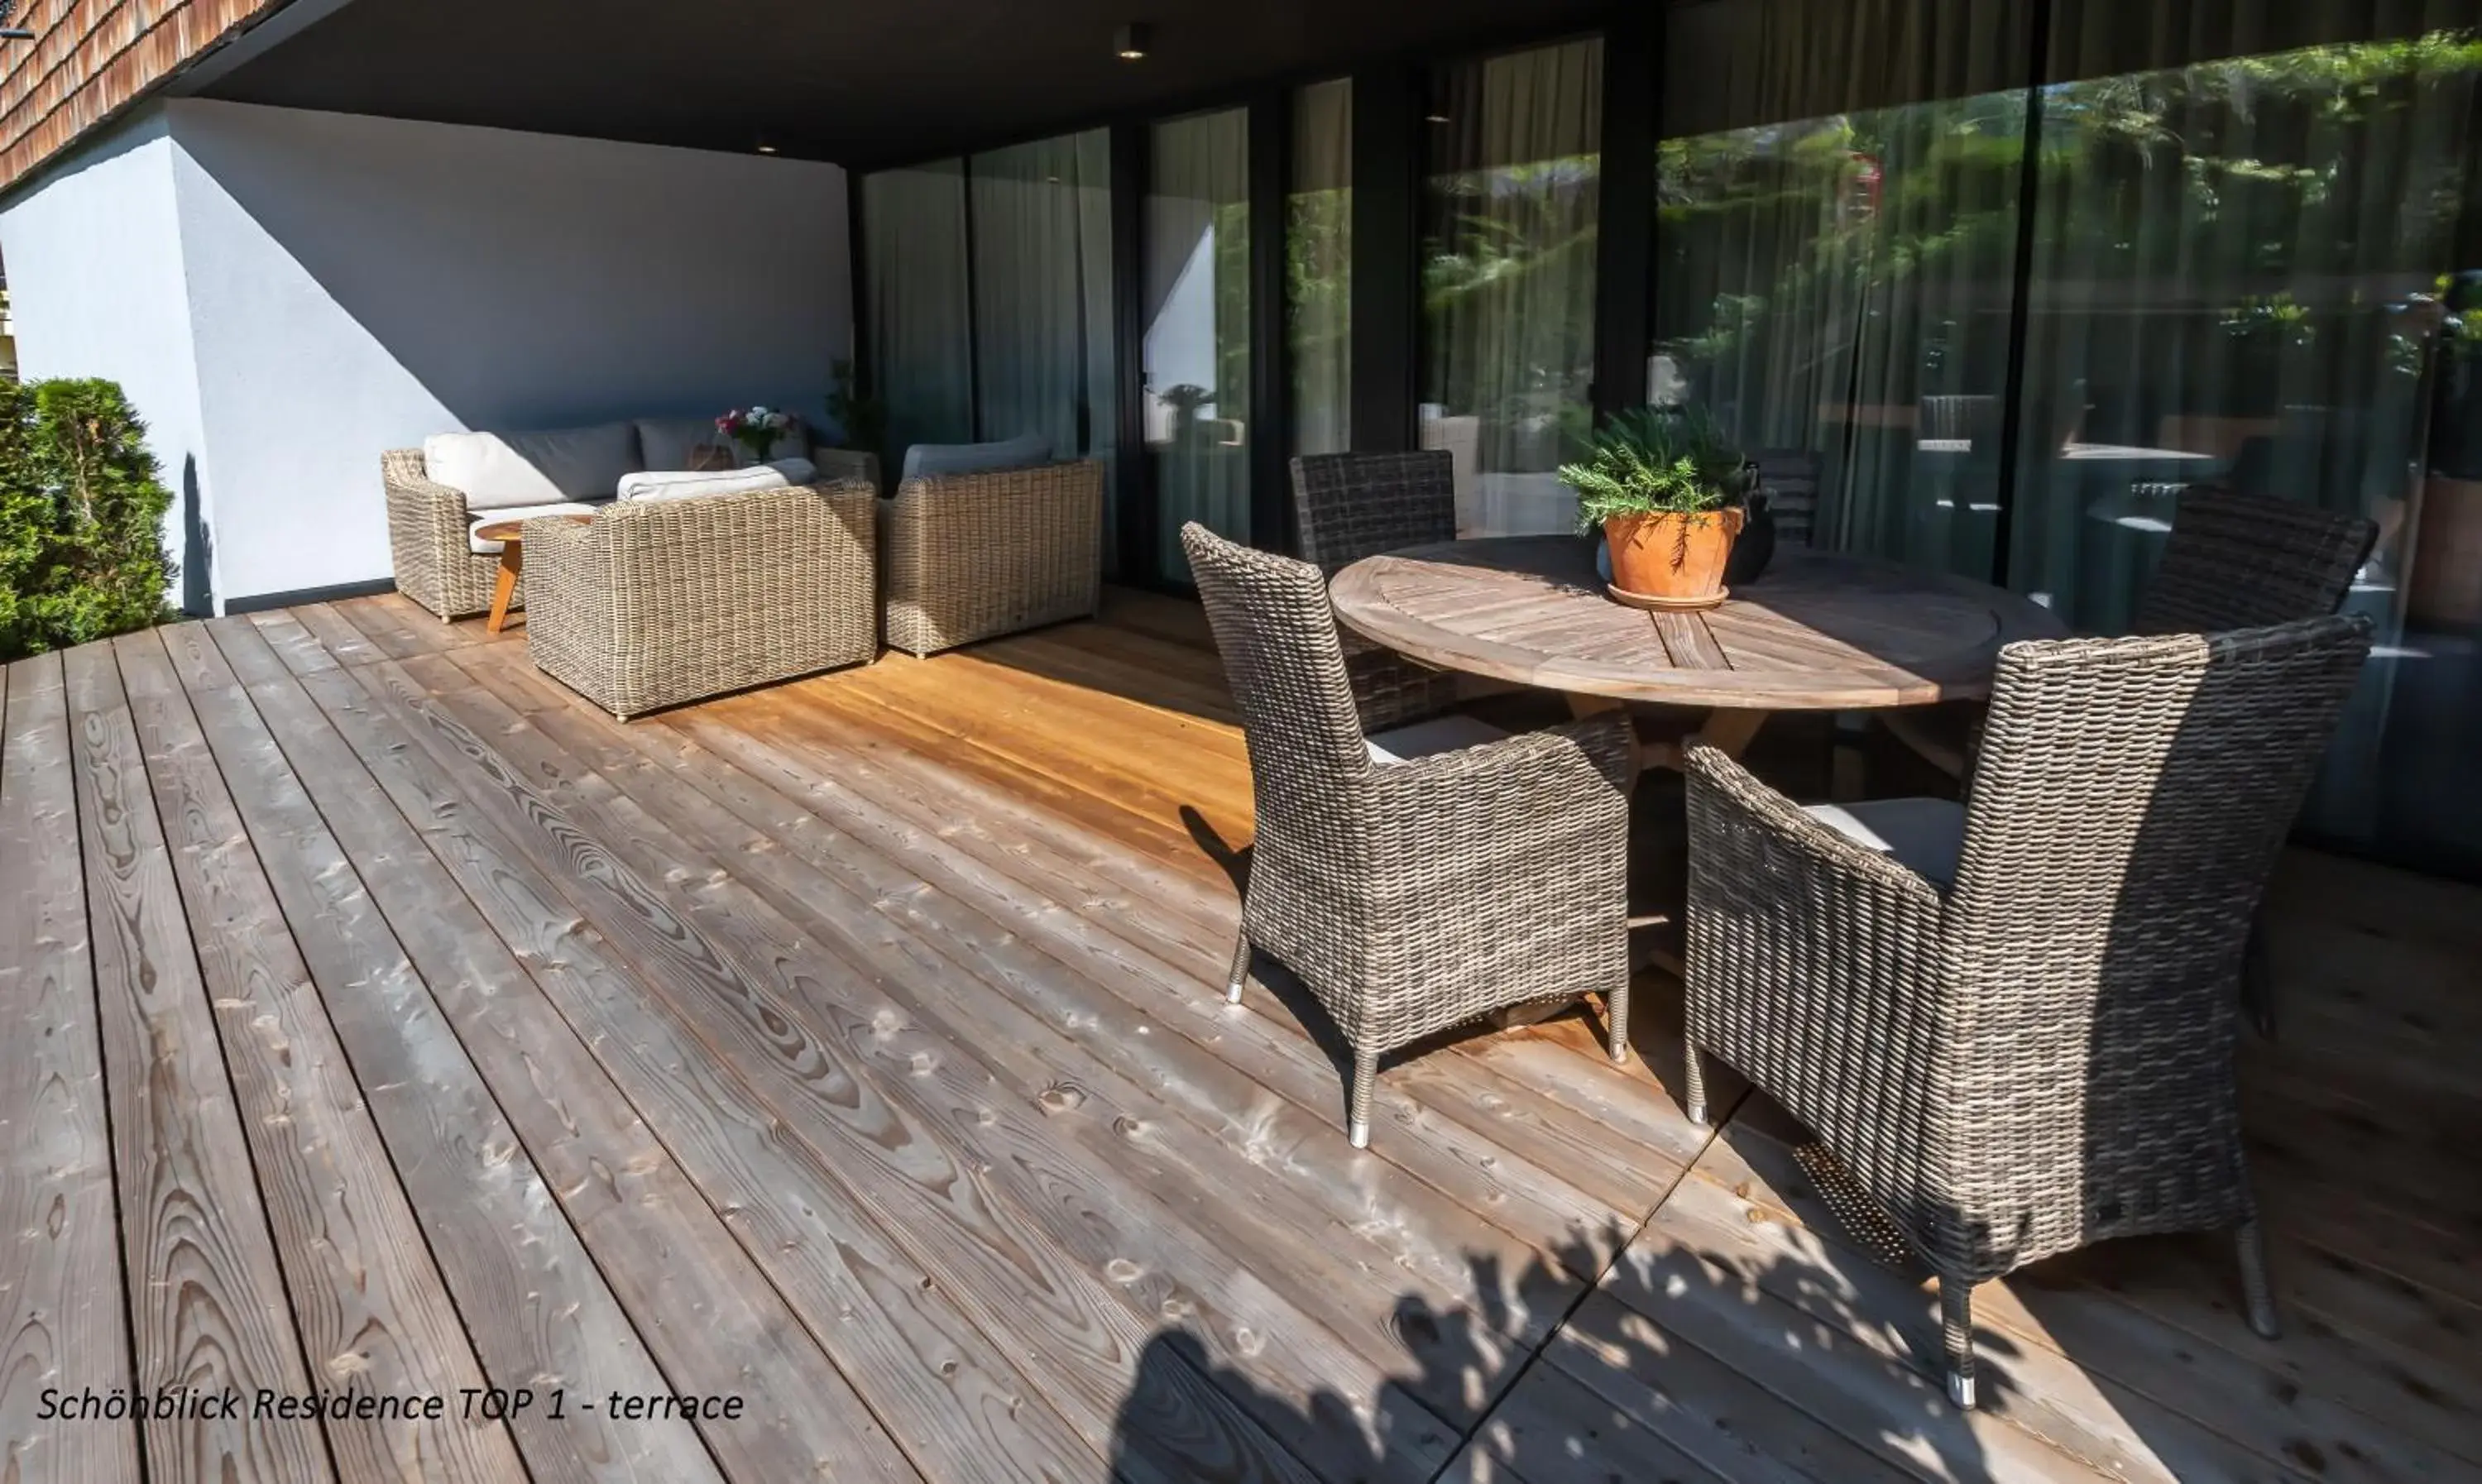 Balcony/Terrace, Patio/Outdoor Area in Schonblick